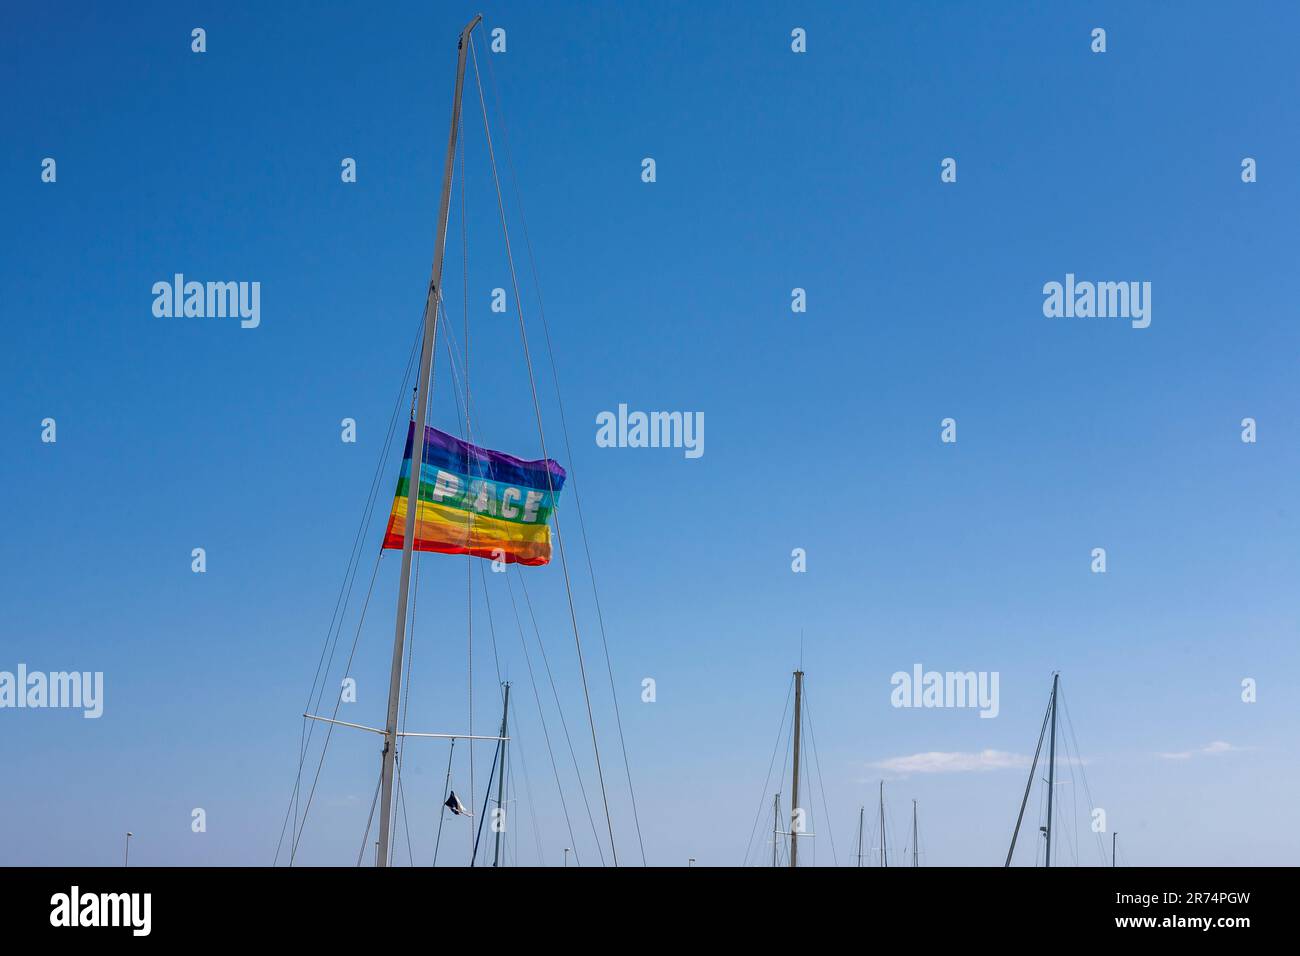 Friedensflagge auf einer Yacht, Rocella Ionica Marina, Kalabrien, Italien Stockfoto